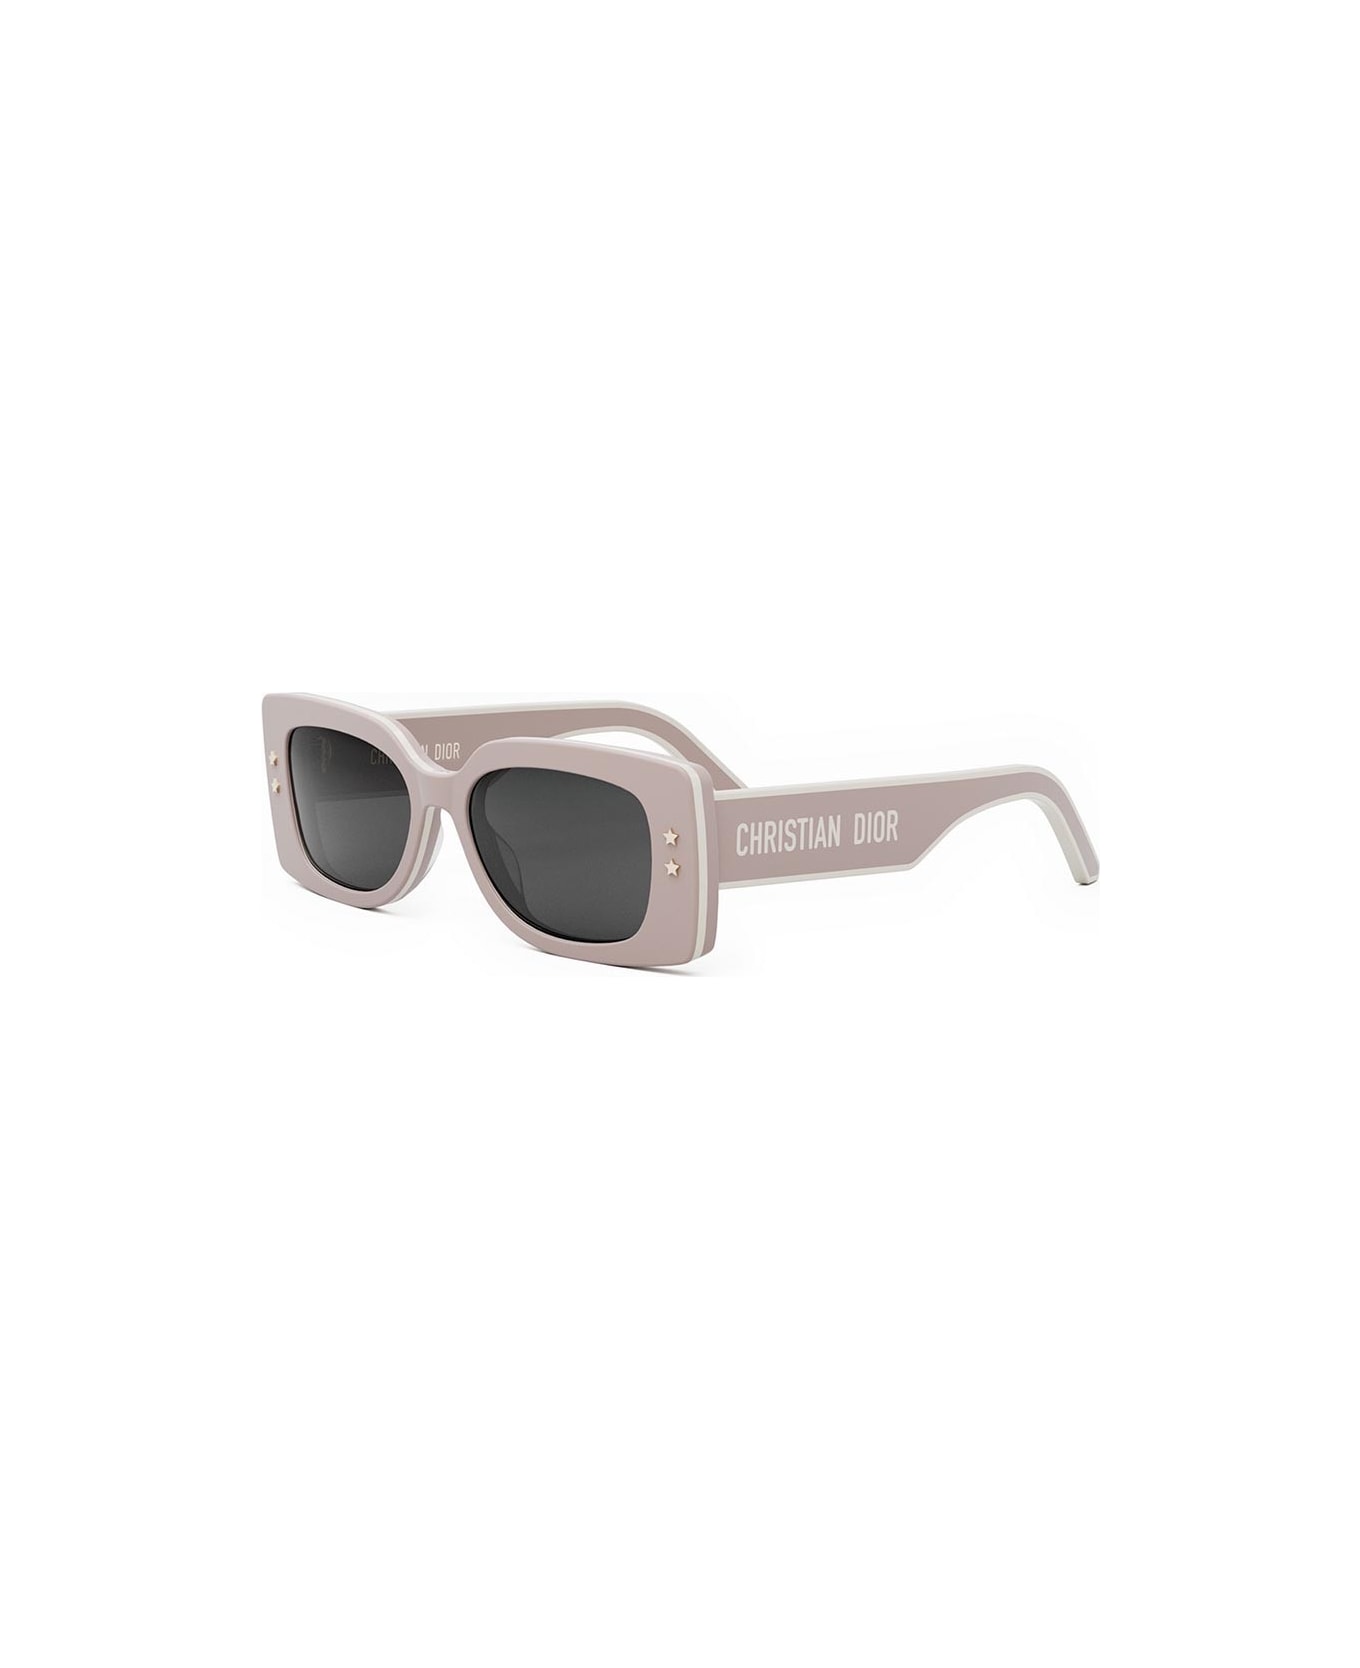 Dior Eyewear Sunglasses - Azzurro/Grigio